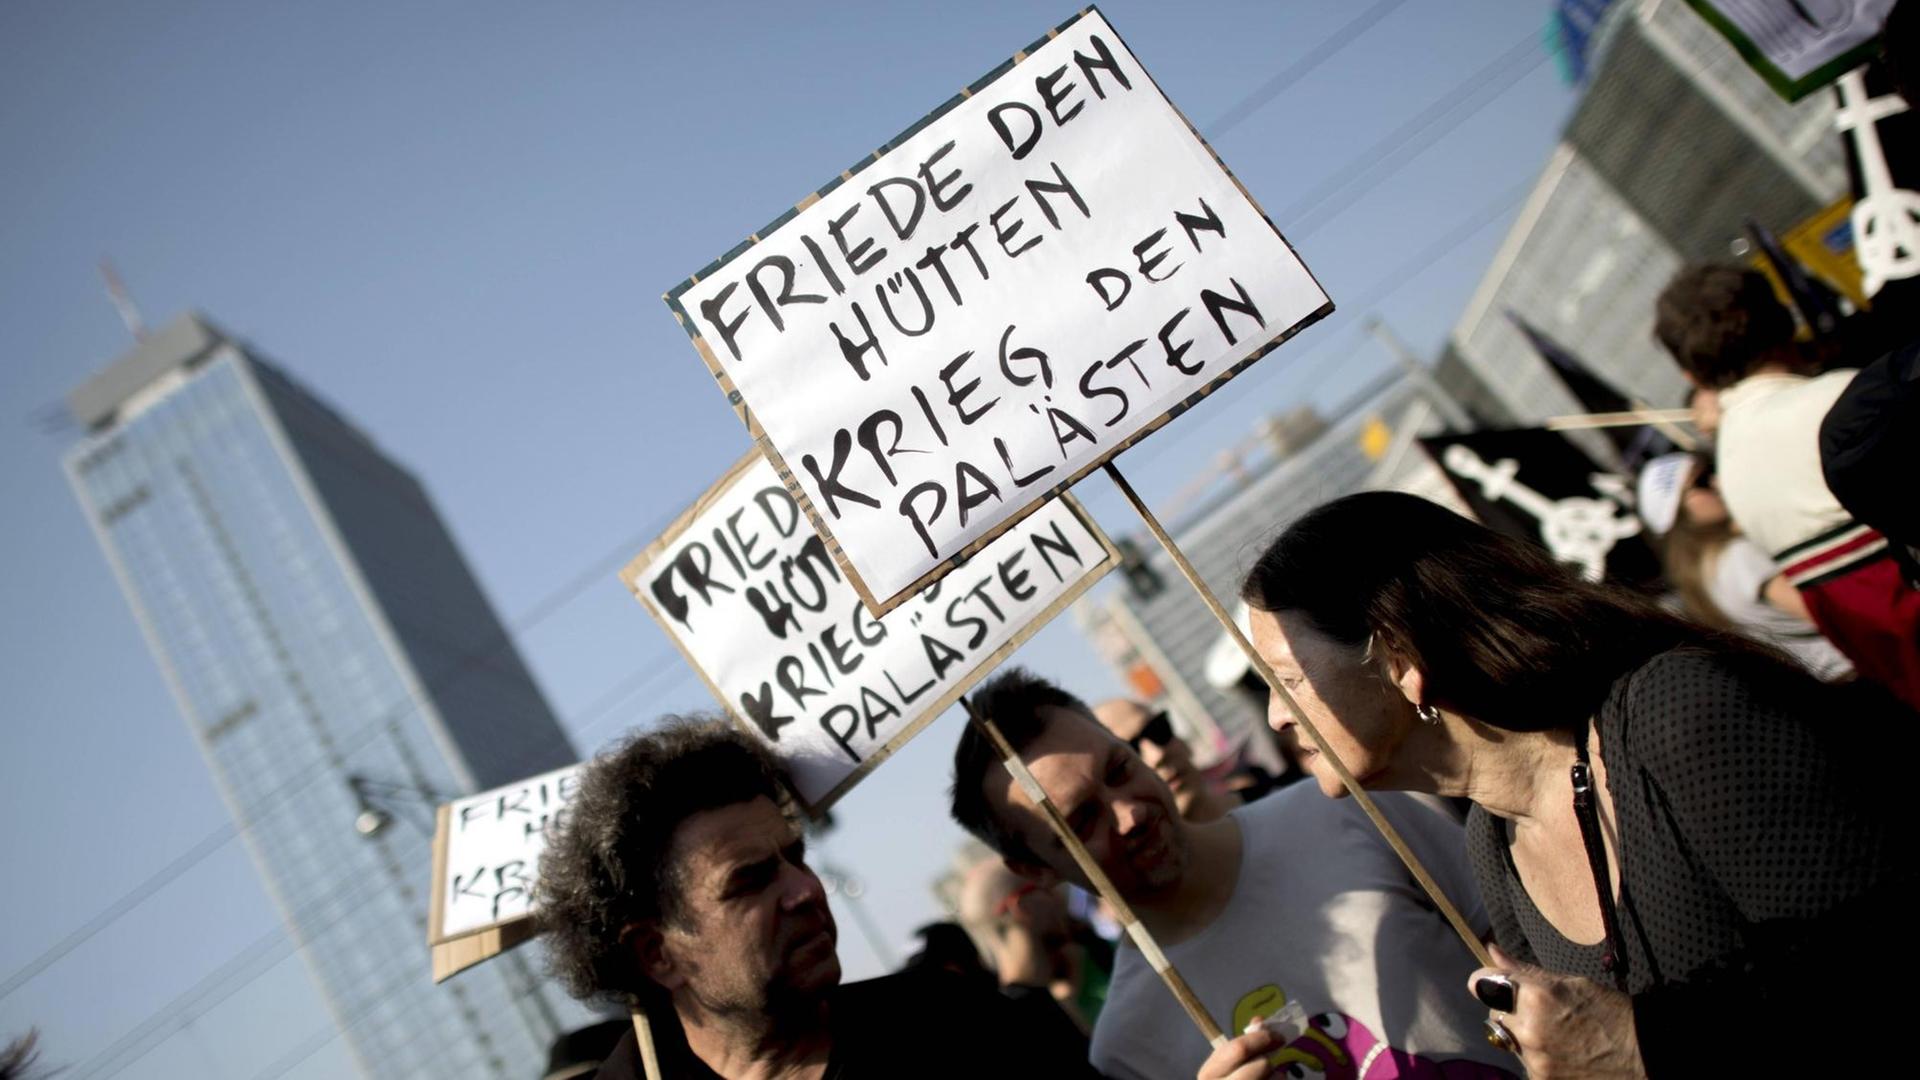 Drei Menschen stehen bei der Mietendemo in Berlin zusammen und halten ein Schilder mit der Aufschrift "Friede Den Hütten - Krieg Den Palästen".